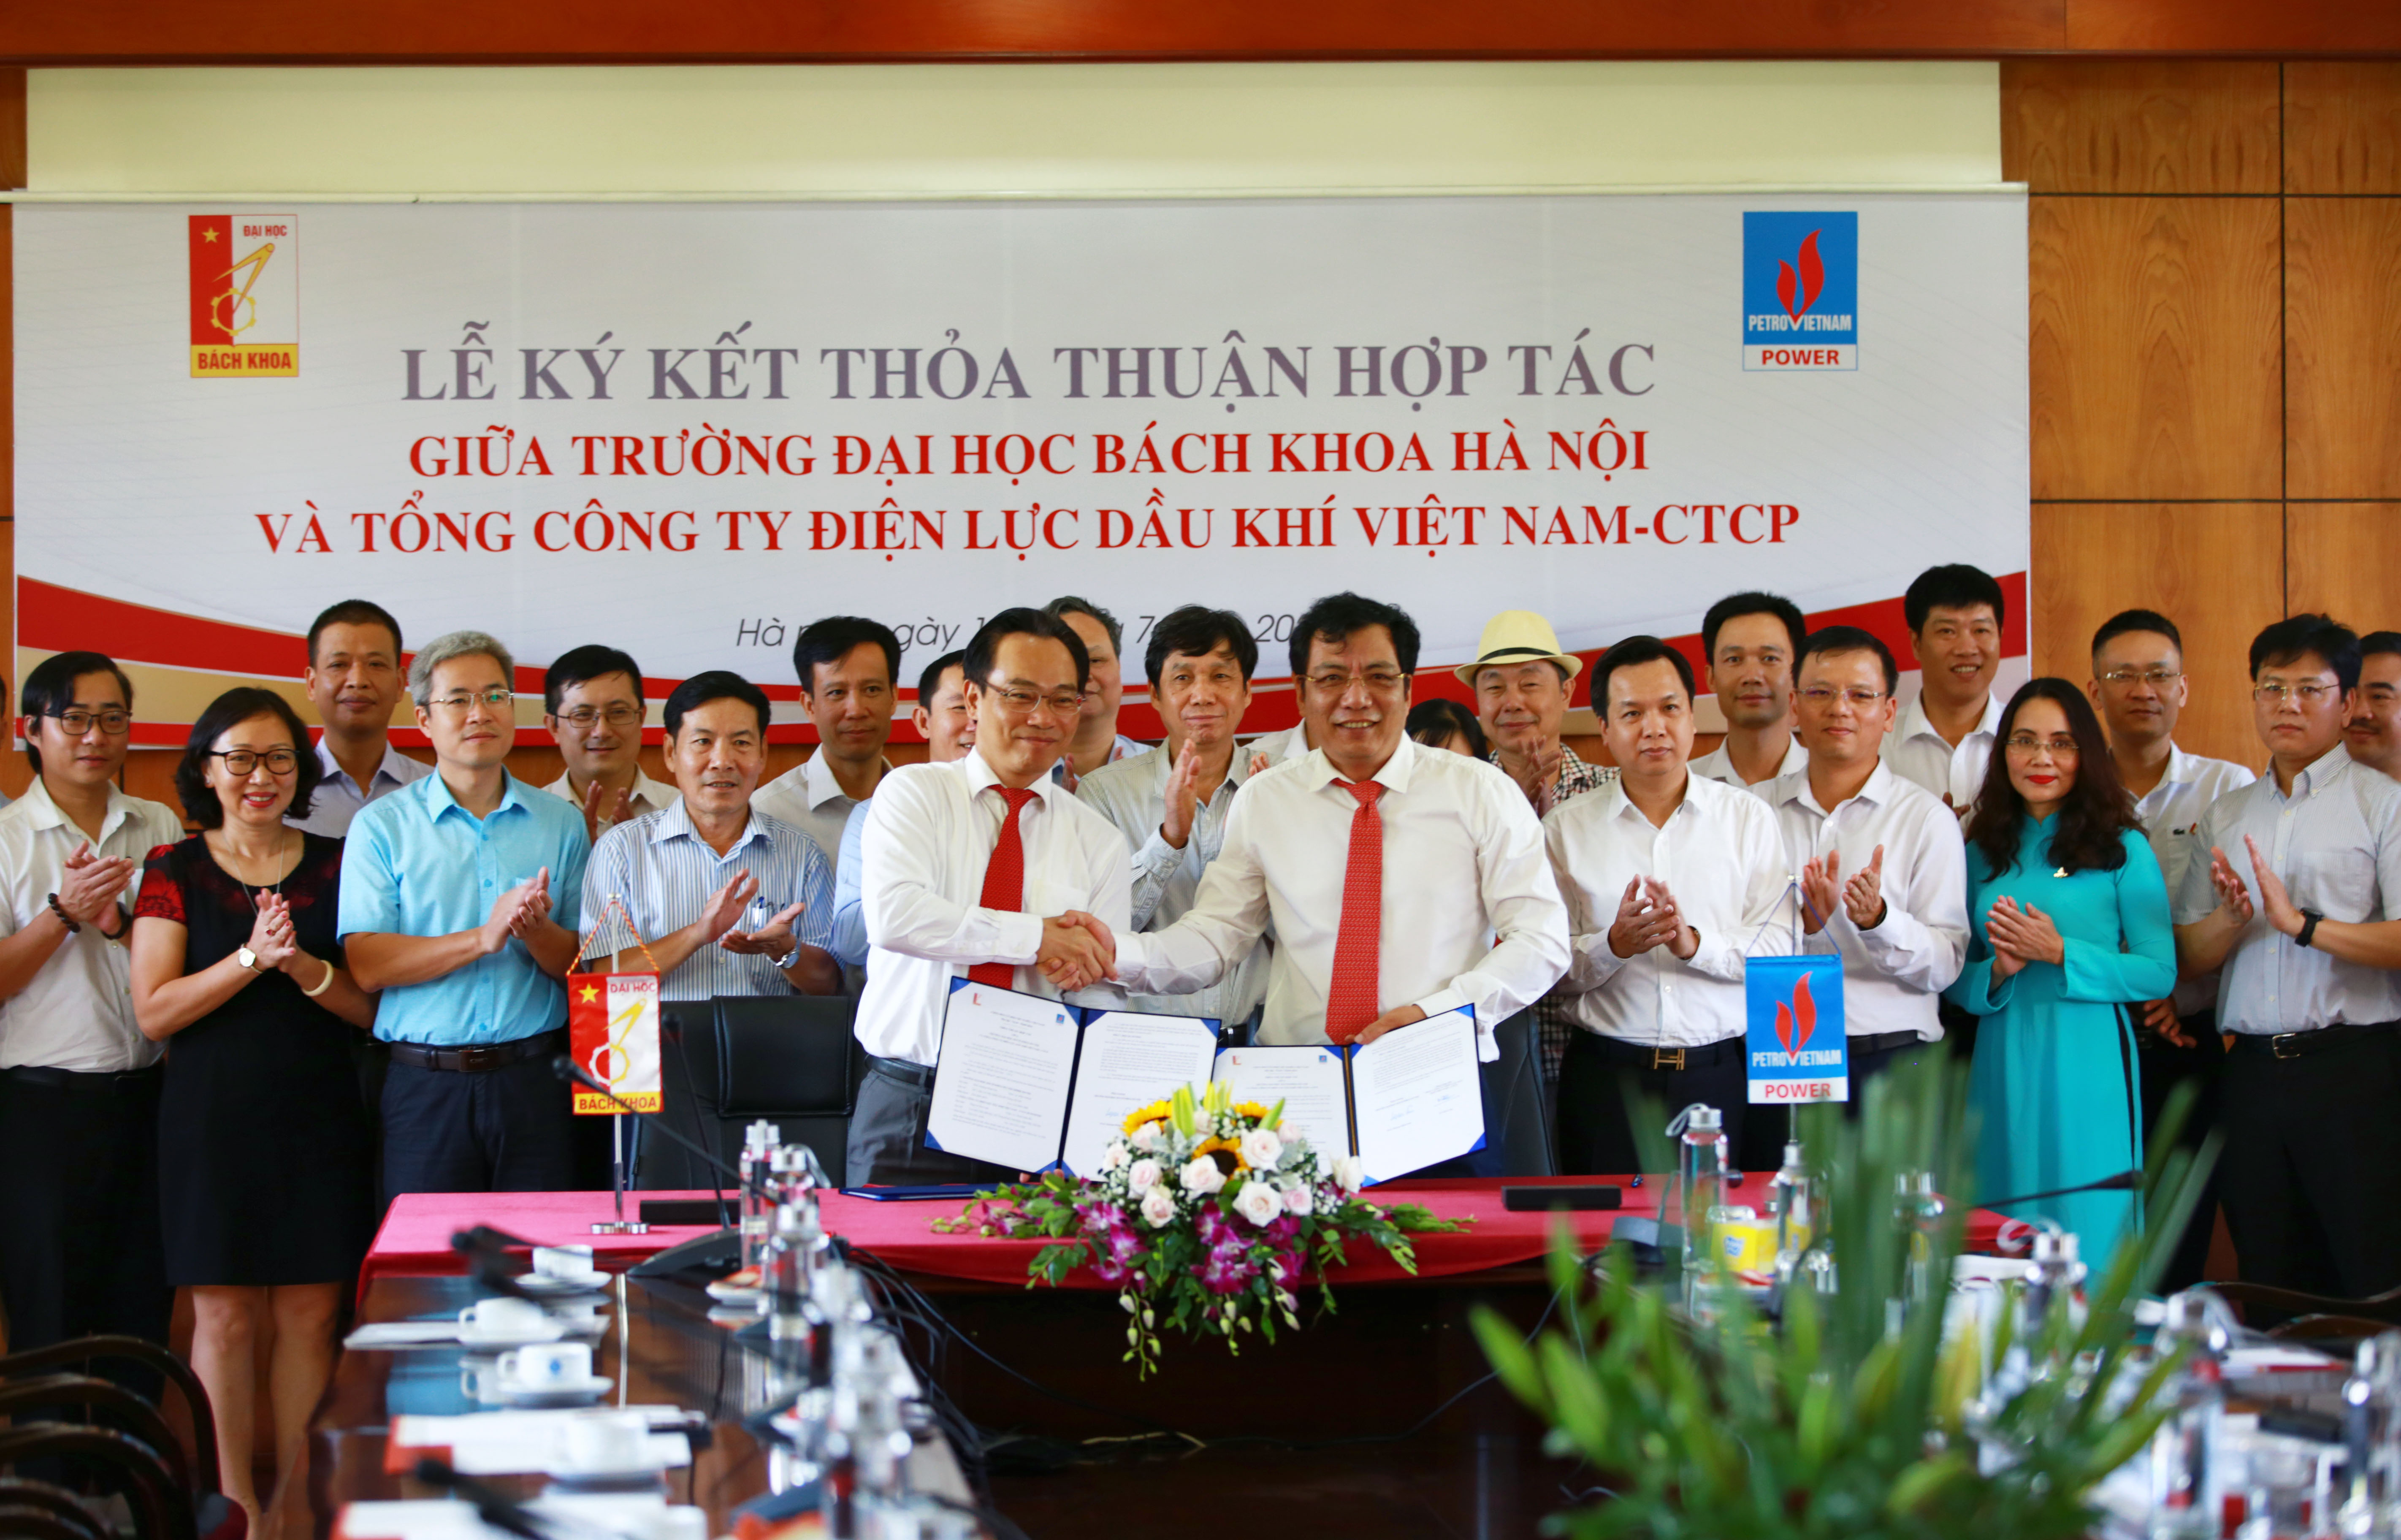 PV Power và Trường Đại học Bách khoa Hà Nội ký kết thỏa thuận hợp tác